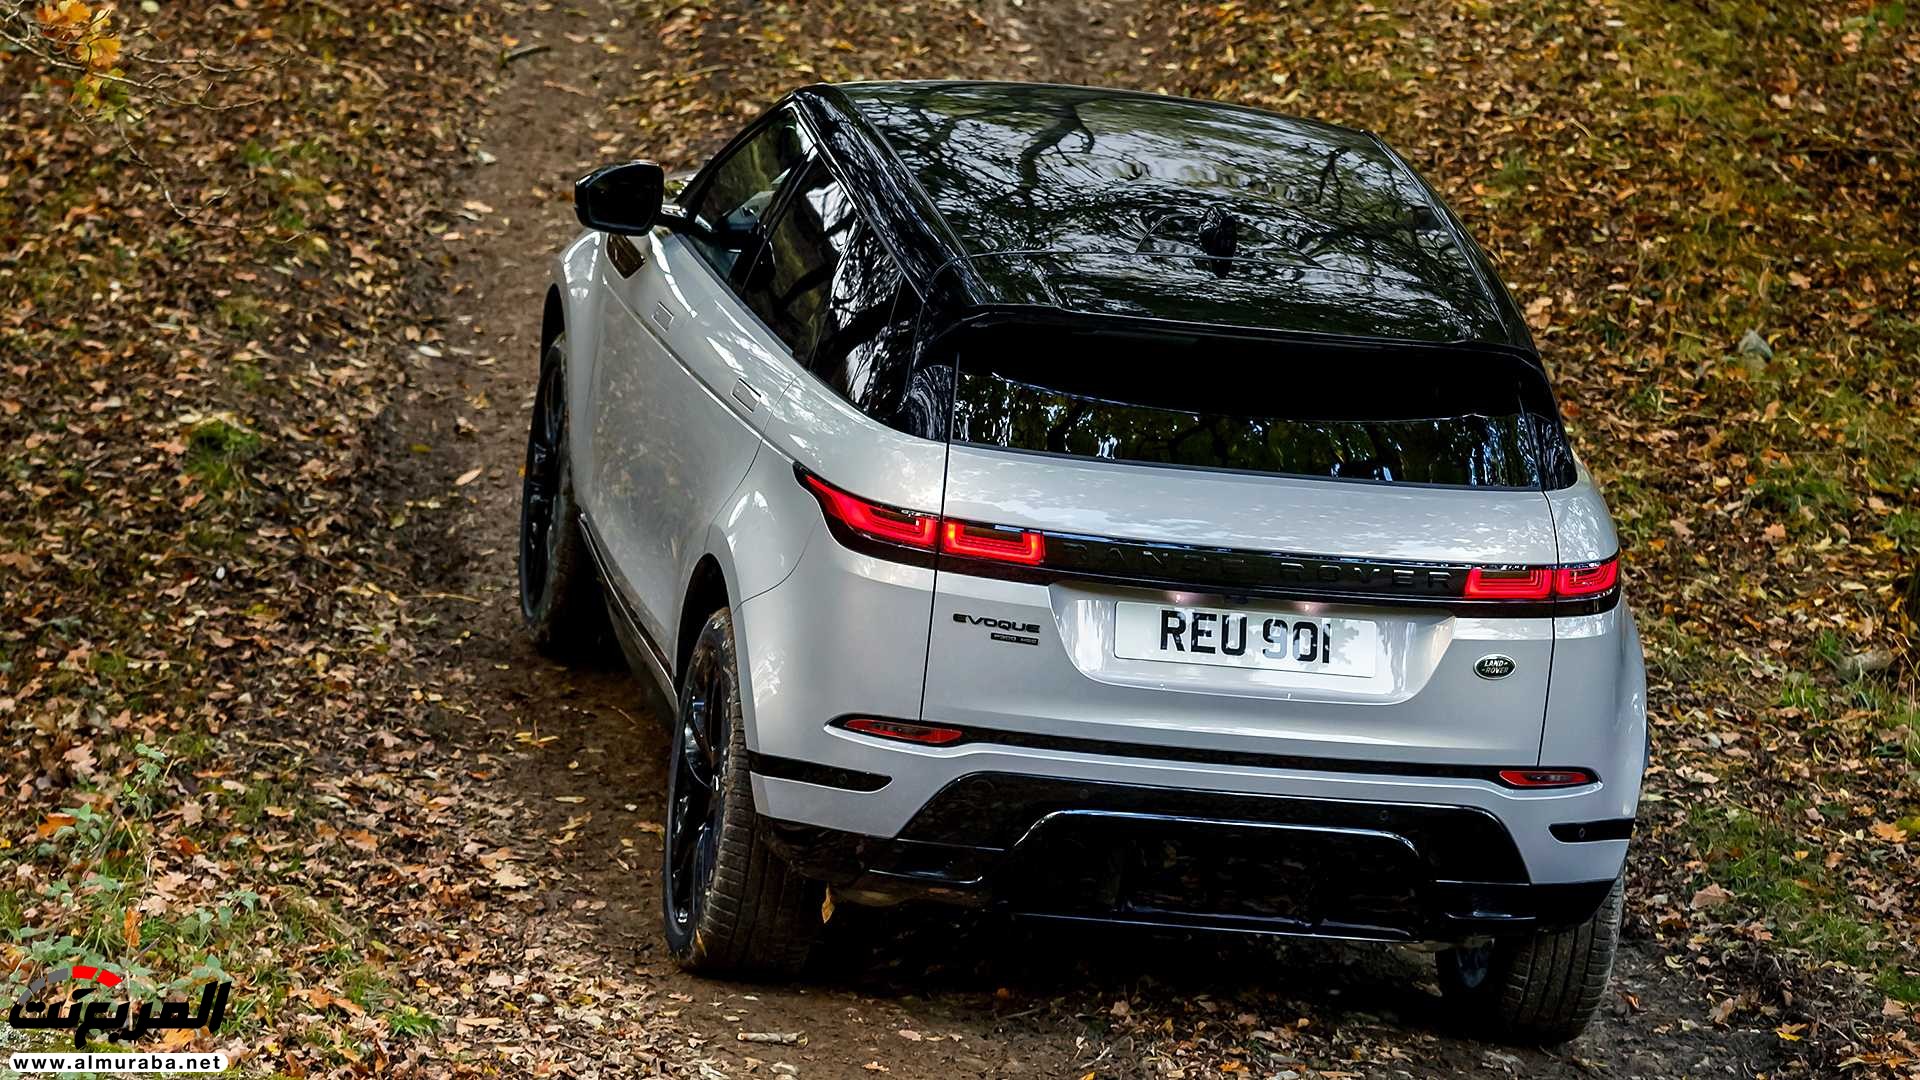 اهم 7 معلومات عن رنج روفر ايفوك 2020 الجديدة كلياً Range Rover Evoque 13